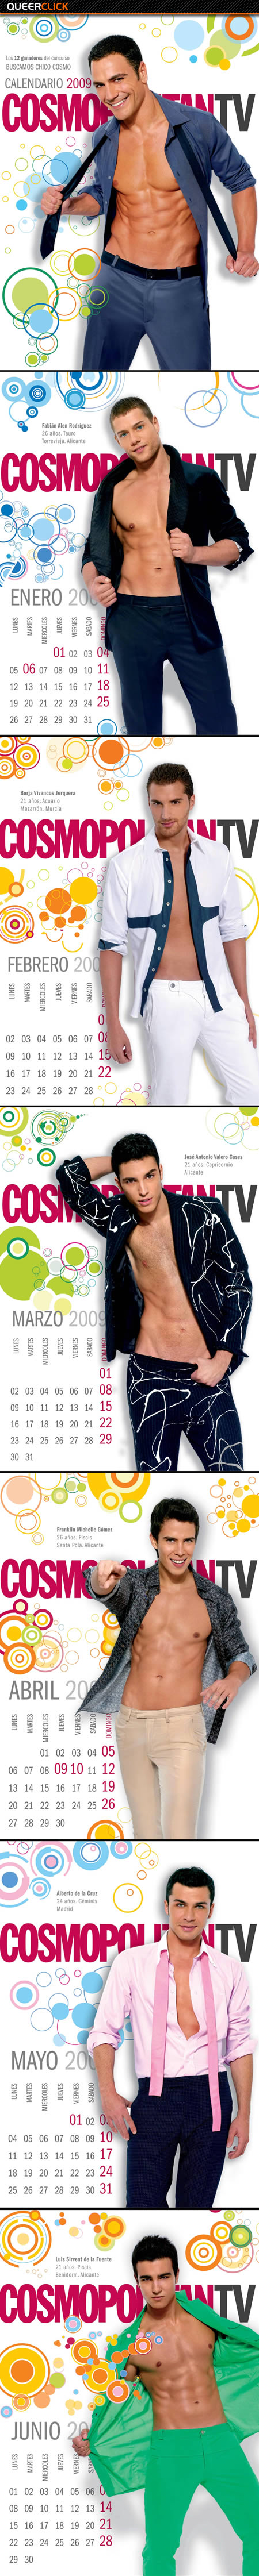 Calendario Cosmopolitan 2009